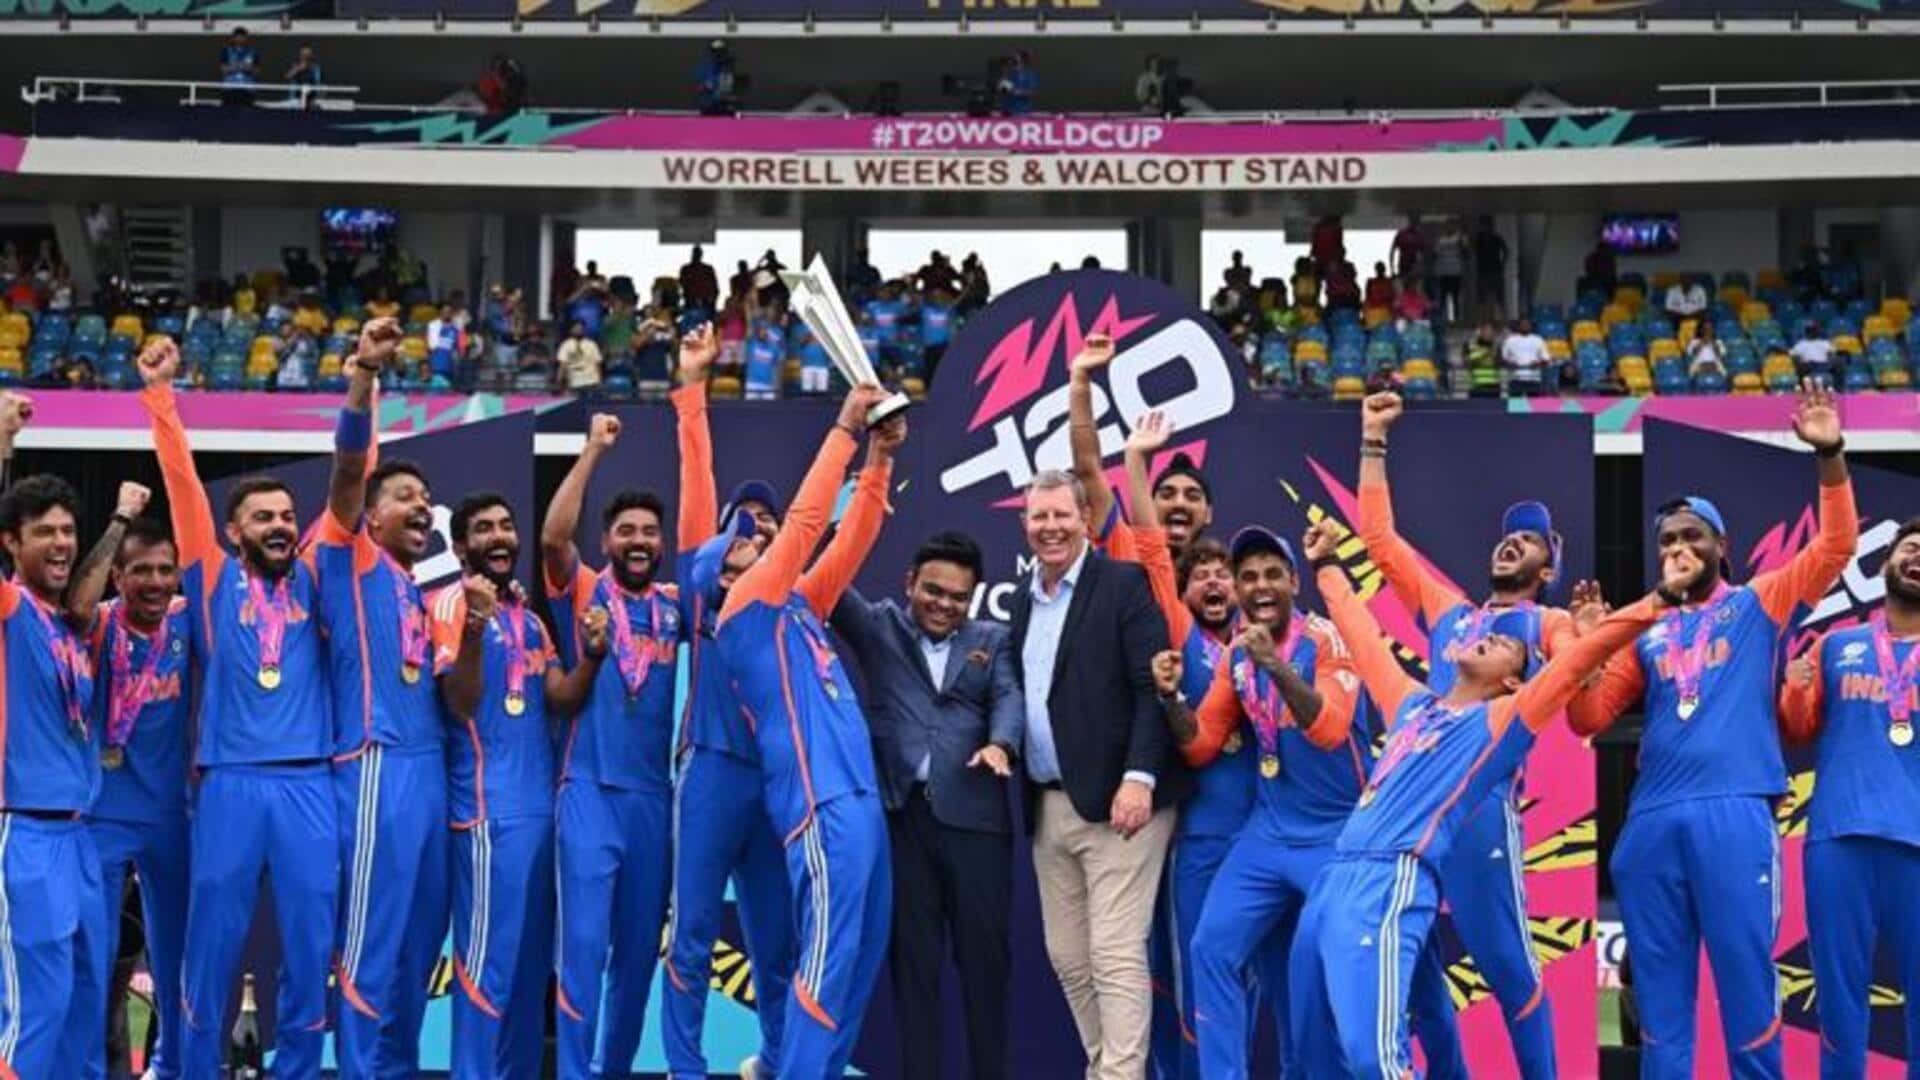 பார்படோஸை தாக்கிய சூறாவளி: T20 உலகக்கோப்பை சாம்பியன்கள் இந்தியா திரும்புவதில் சிக்கல்